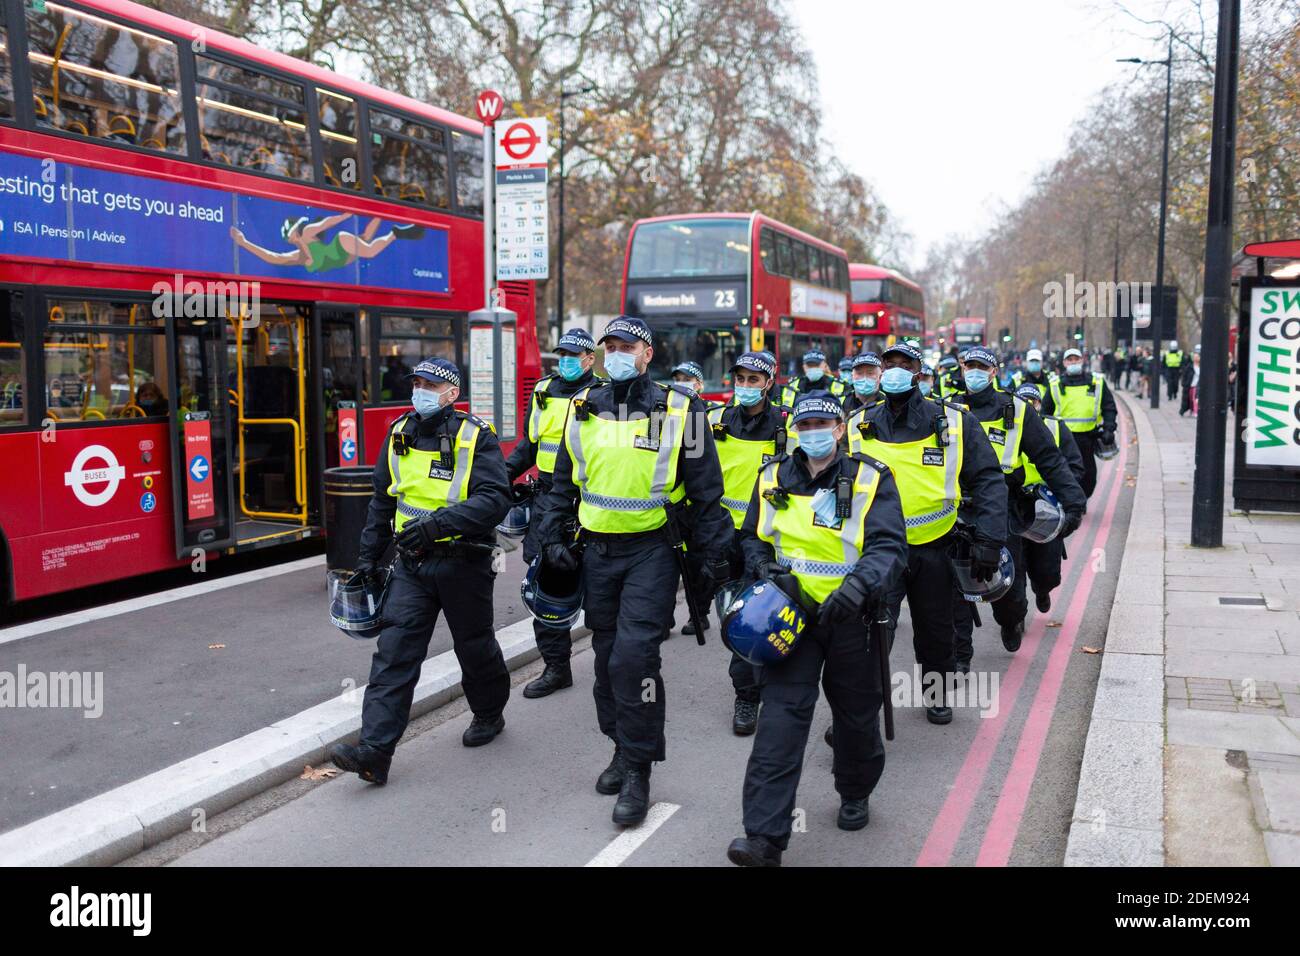 Manifestation anti-verrouillage, Marble Arch, Londres, 28 novembre 2020. Des policiers avec des casques anti-émeute marchont sur la route. Banque D'Images